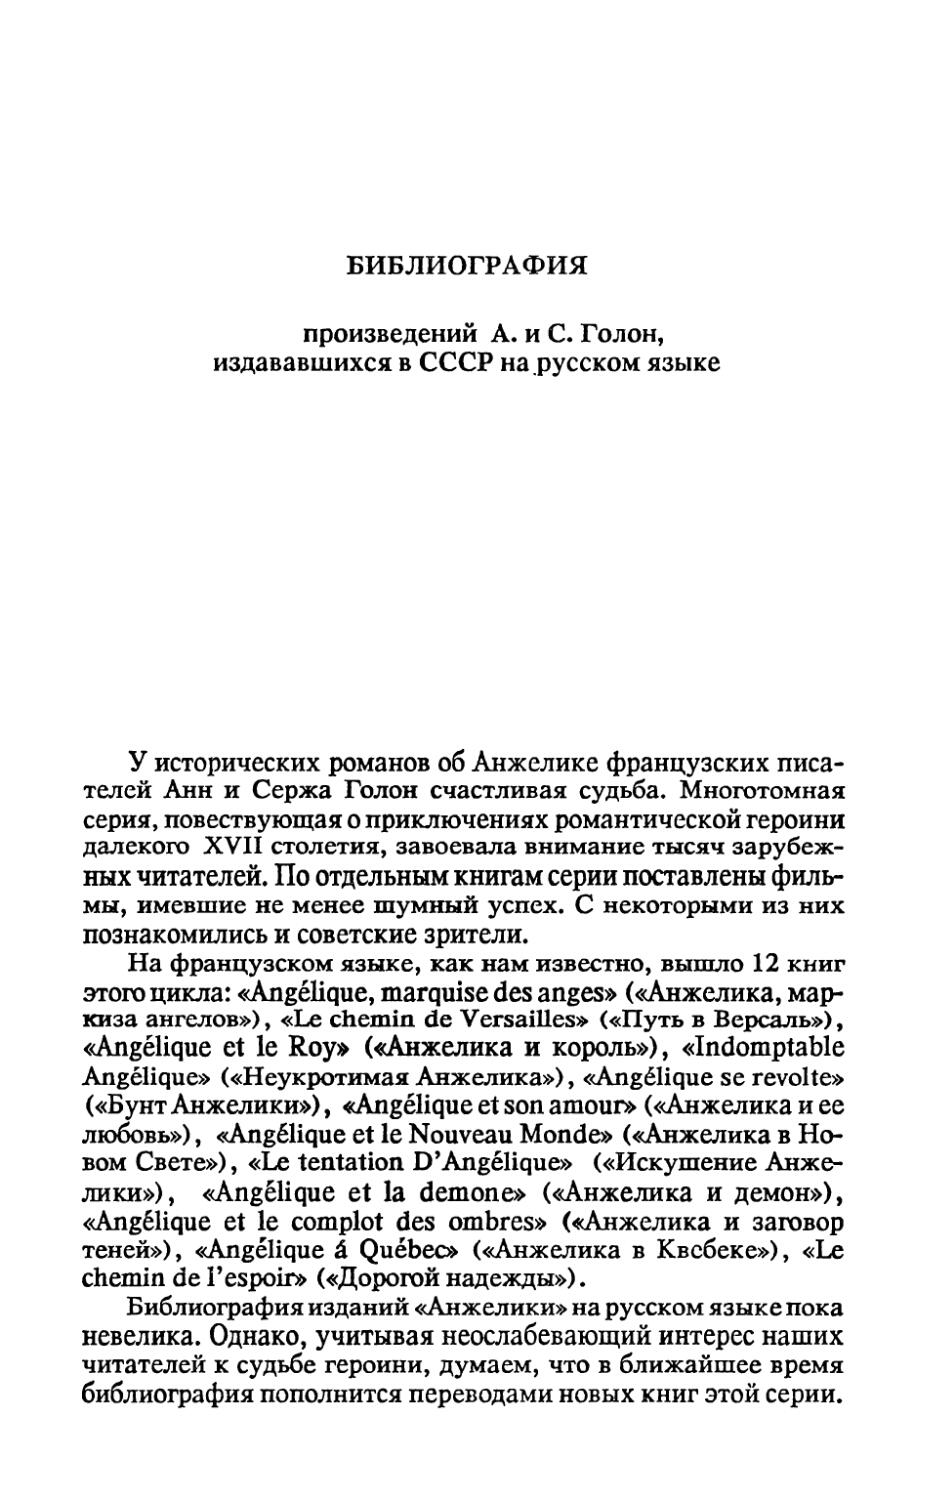 Библиография А. и С. Голон, издававшихся в СССР на русском языке